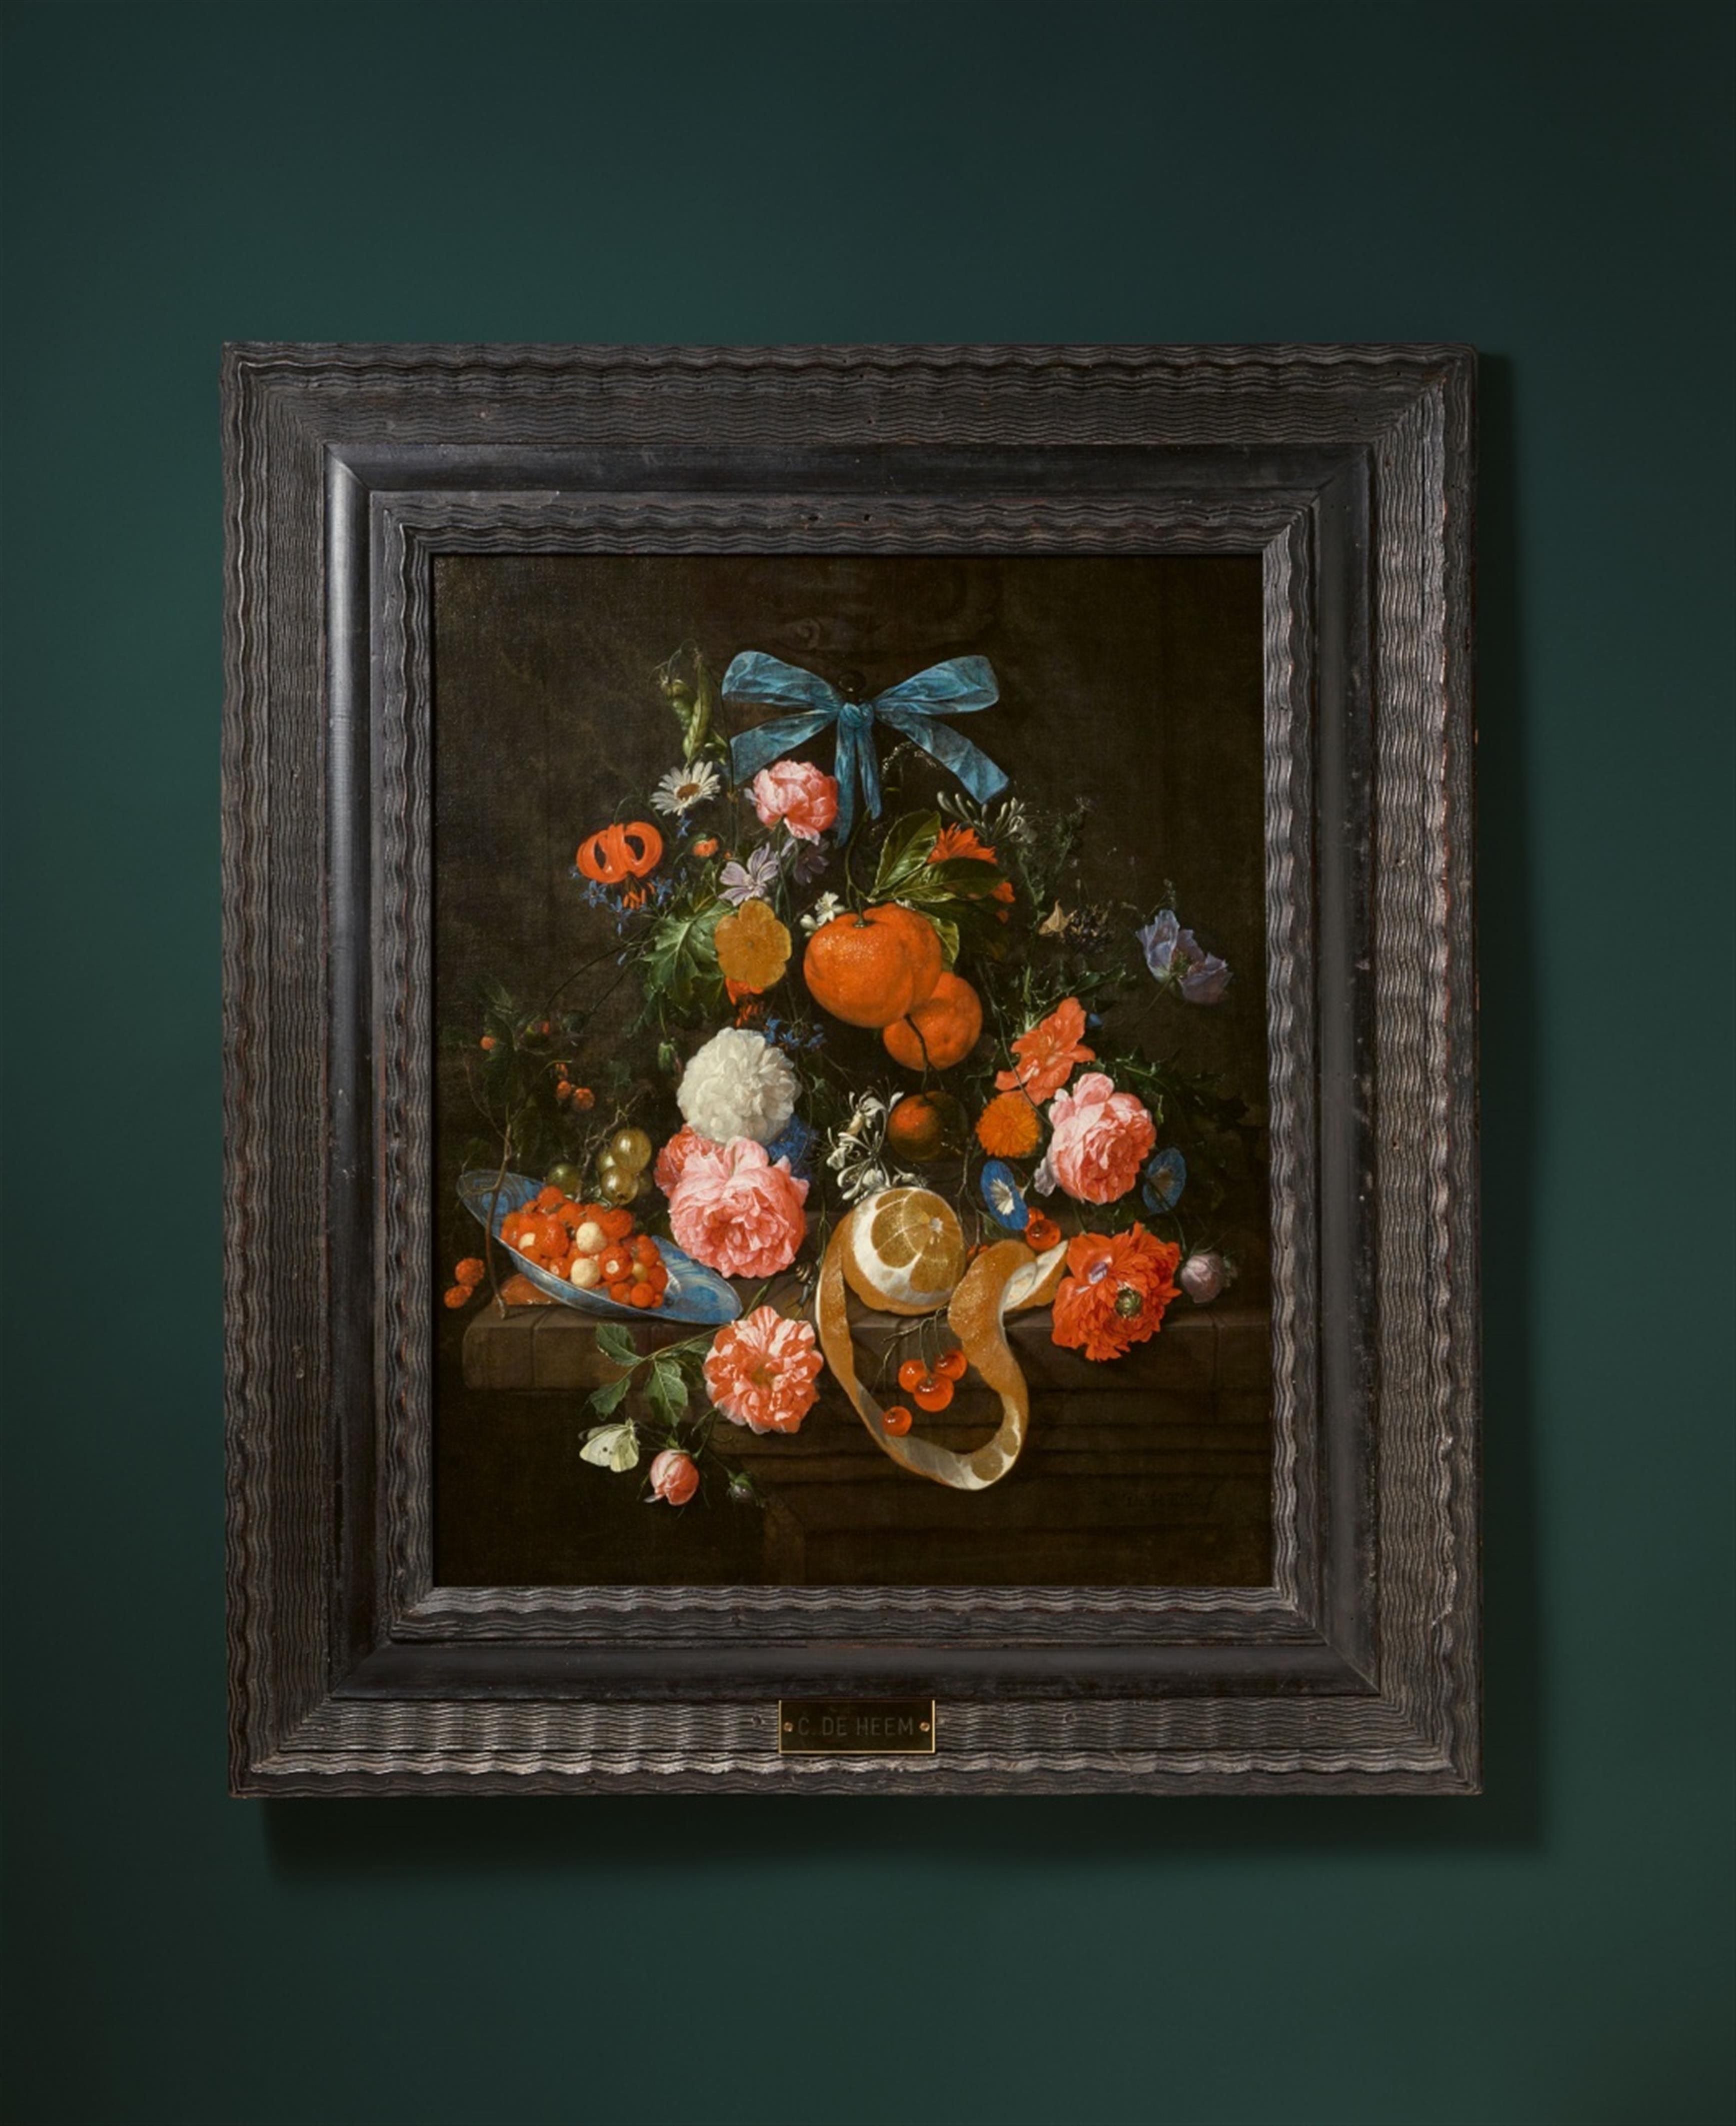 Cornelis de Heem - Stillleben mit Orangen, Rosen, Goldblume und anderen Blumen auf einer Steinplatte mit Walderdbeeren auf einer Wanli-Schale sowie einer geschälten Zitrone, Kirschen und Stachelbeeren - image-2